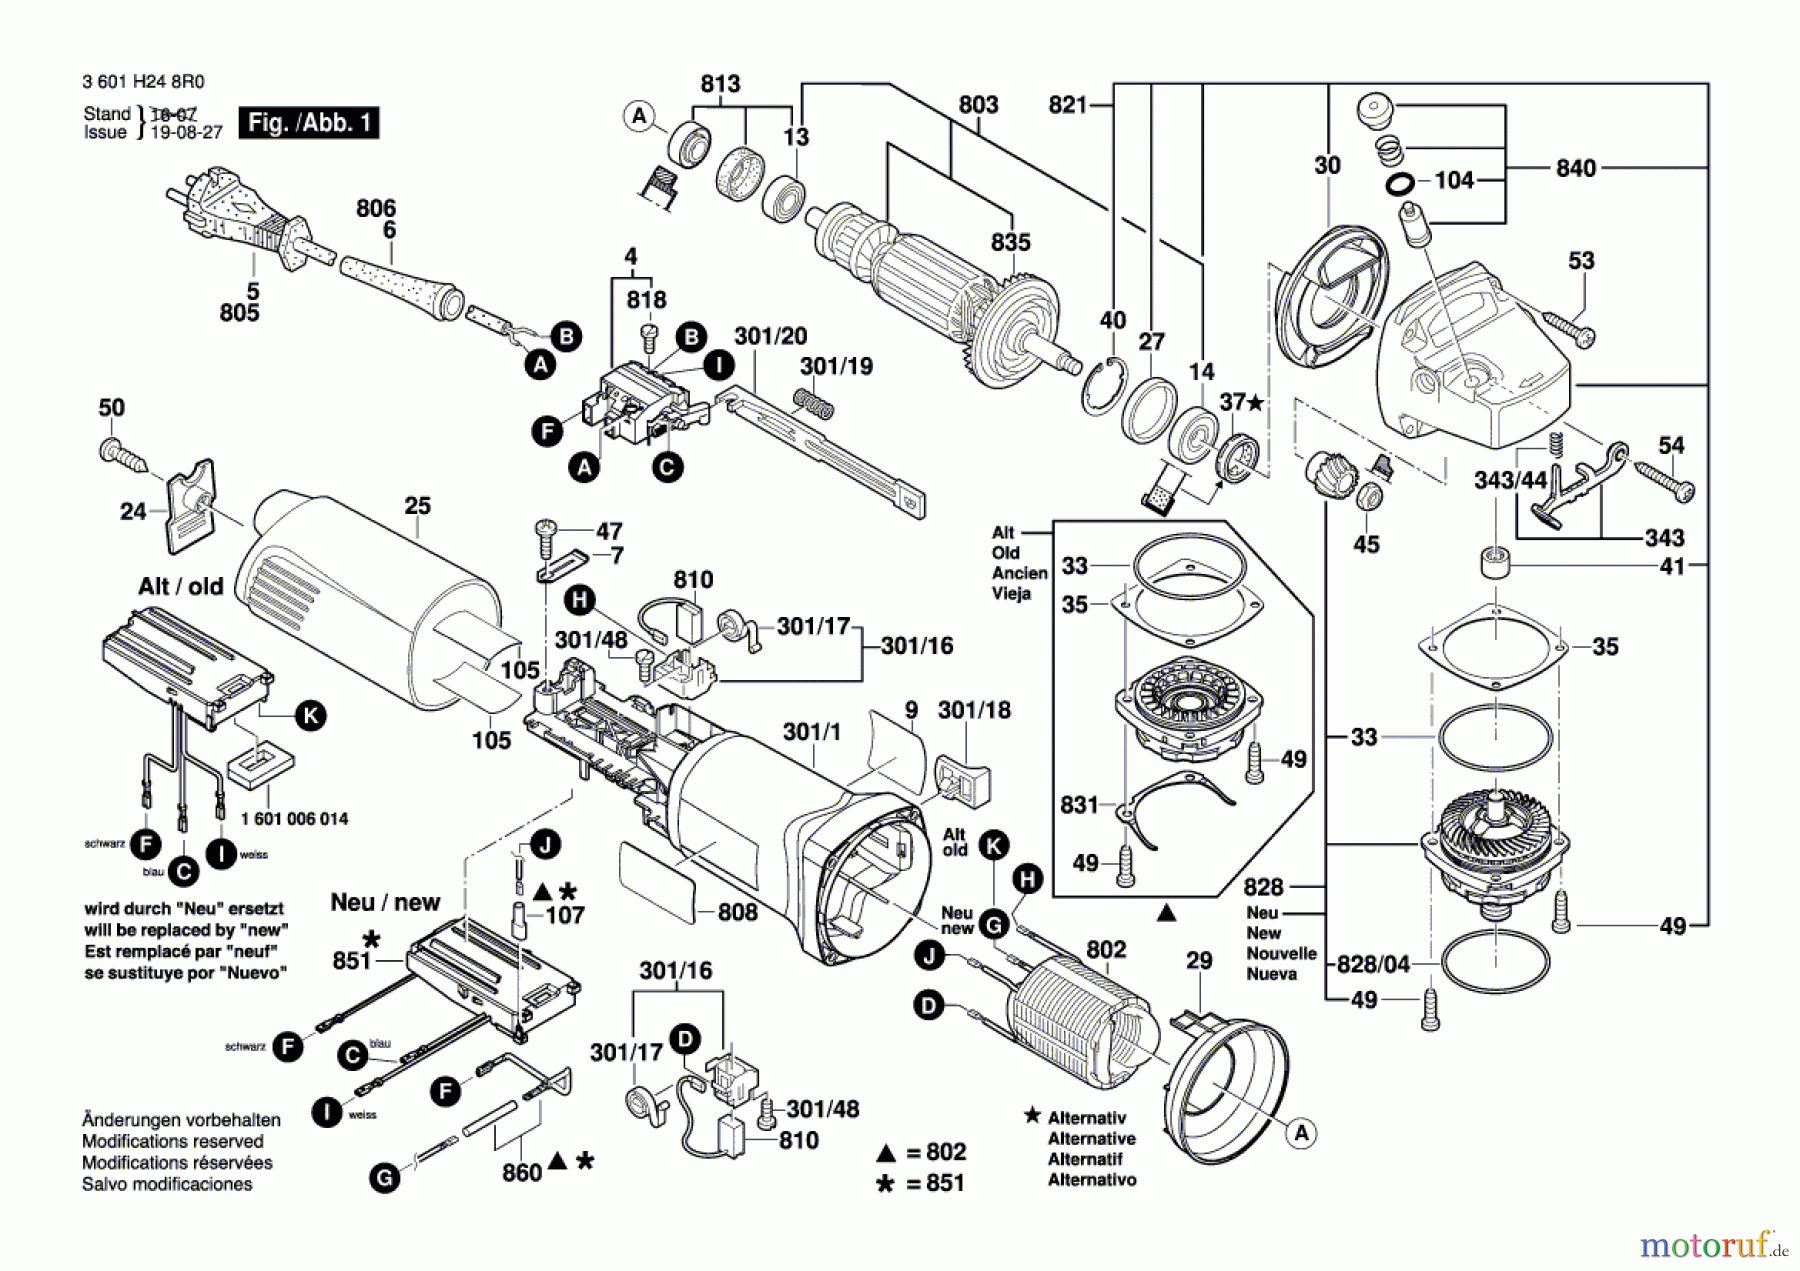  Bosch Werkzeug Winkelschleifer GWS 1400 Seite 1